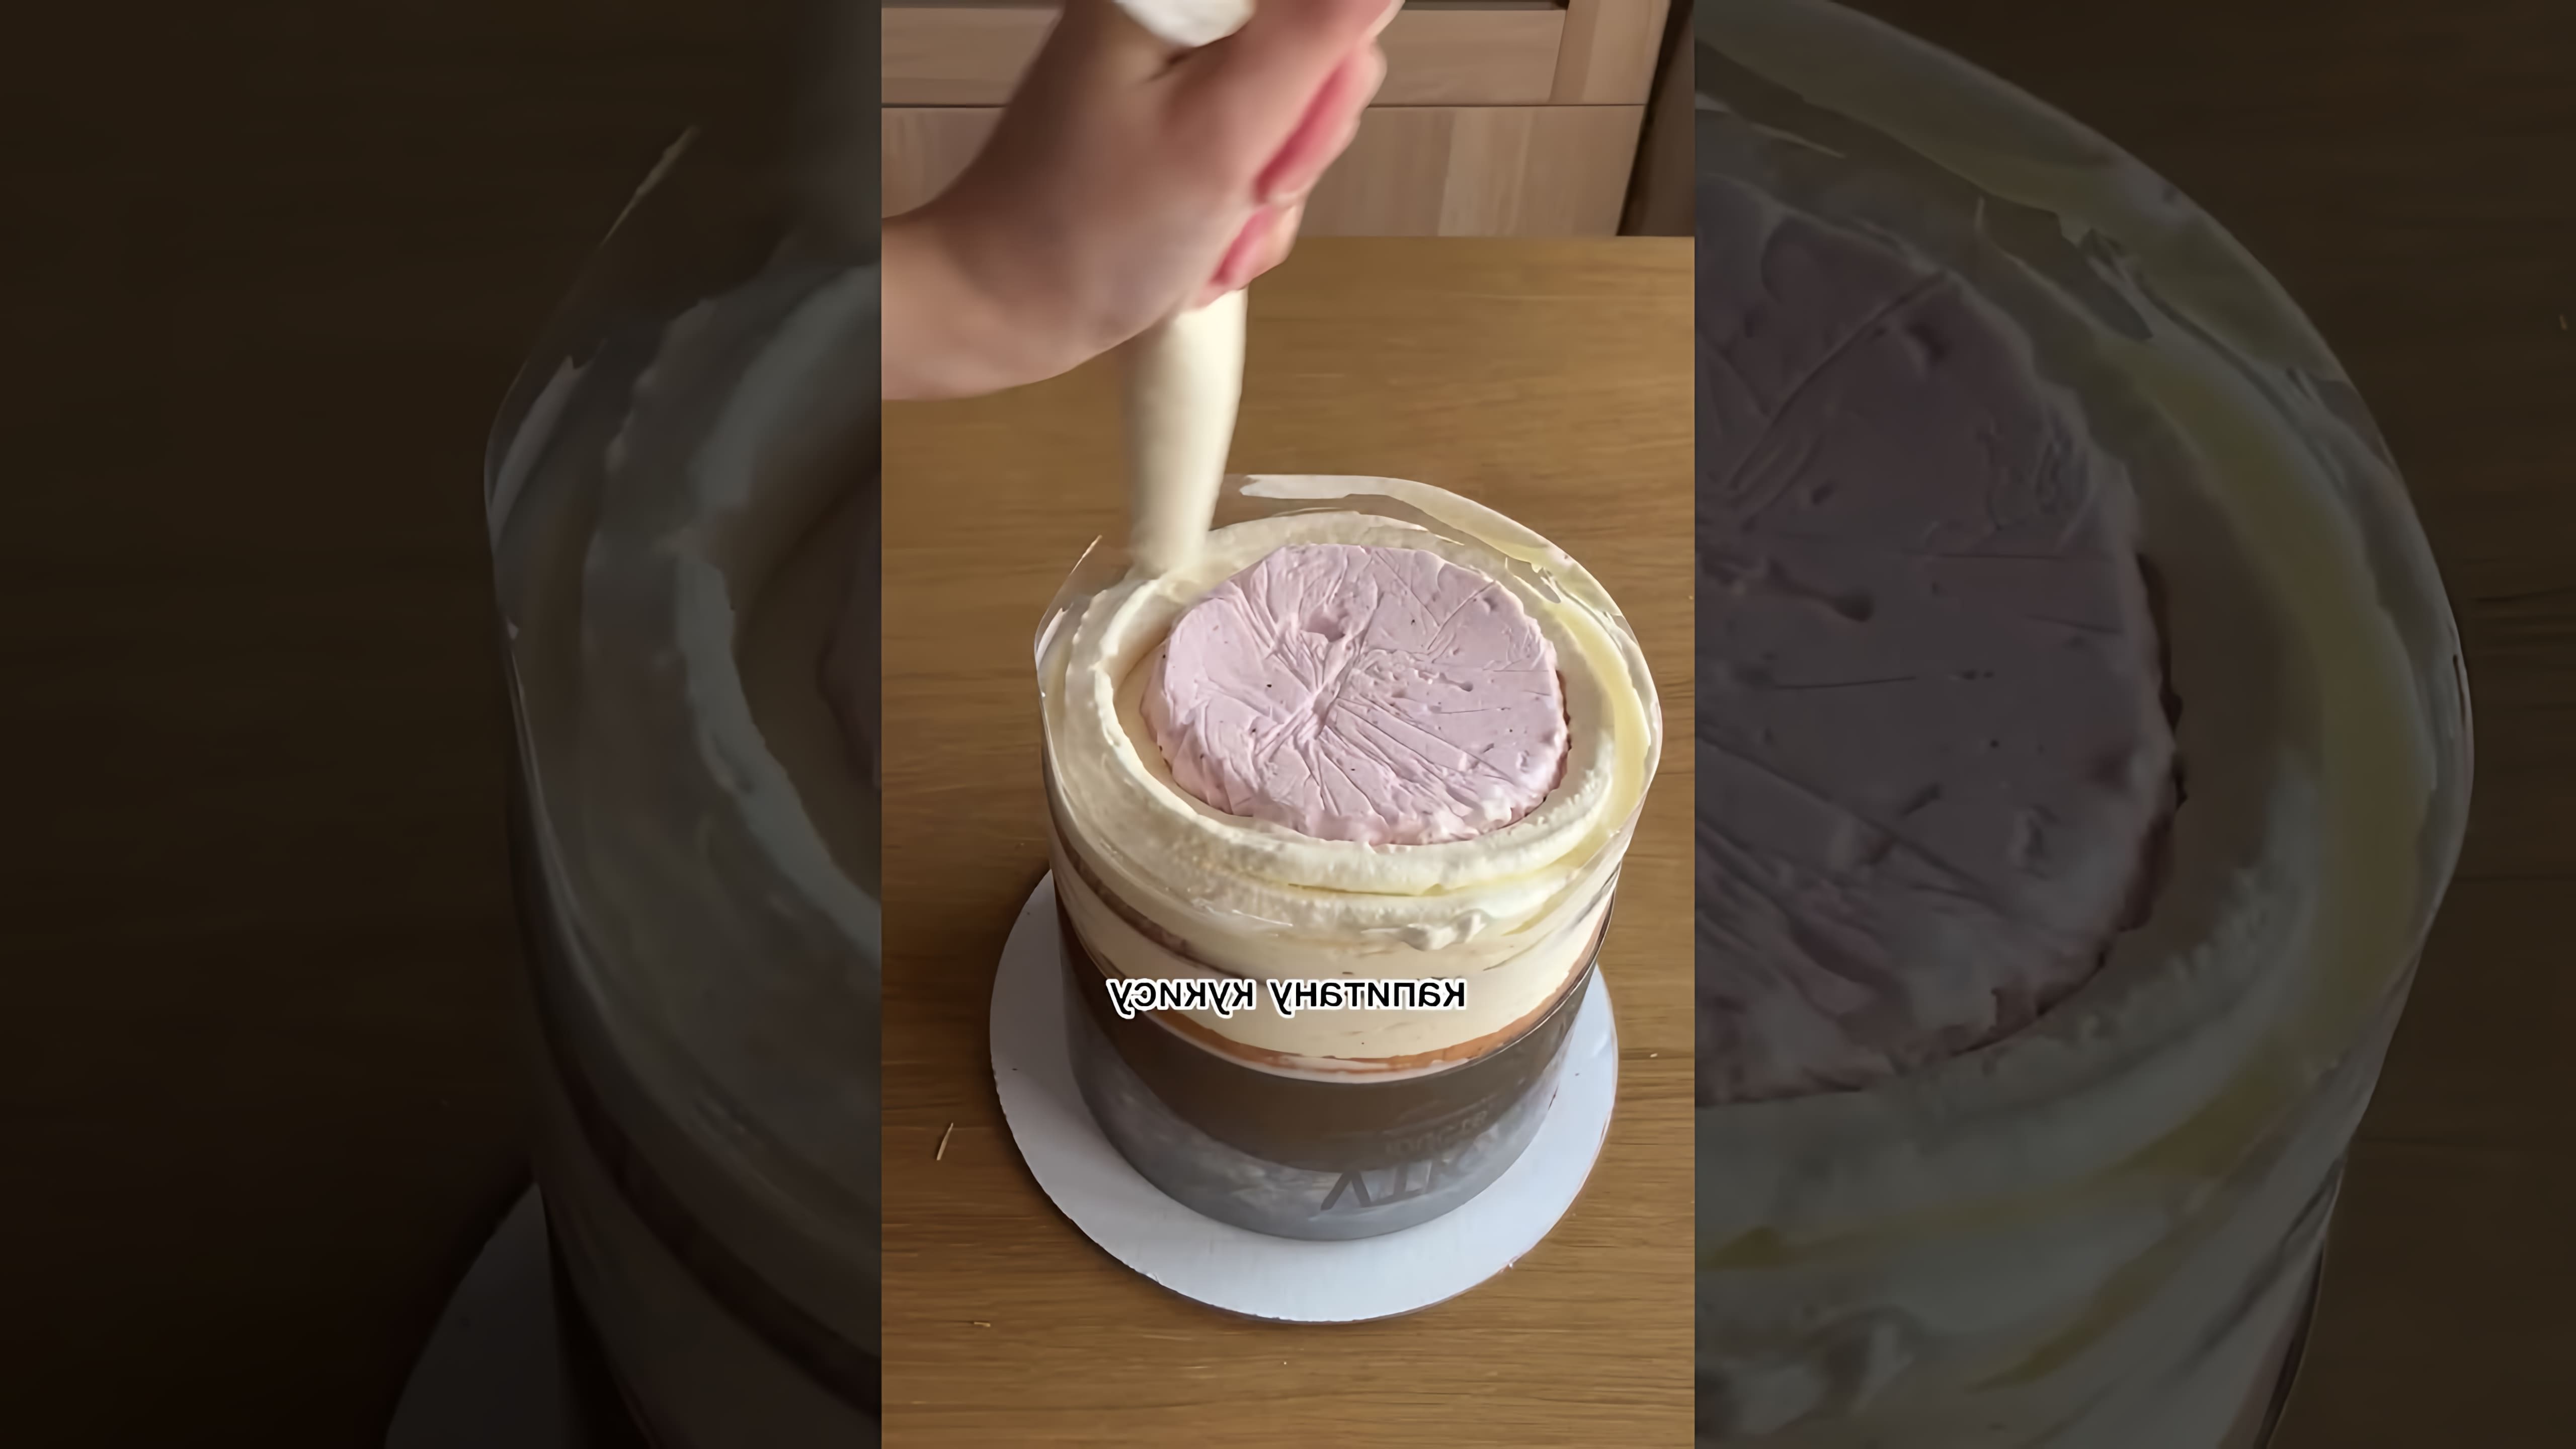 В этом видео кондитер показывает процесс создания торта в форме люстры с клубничной начинкой